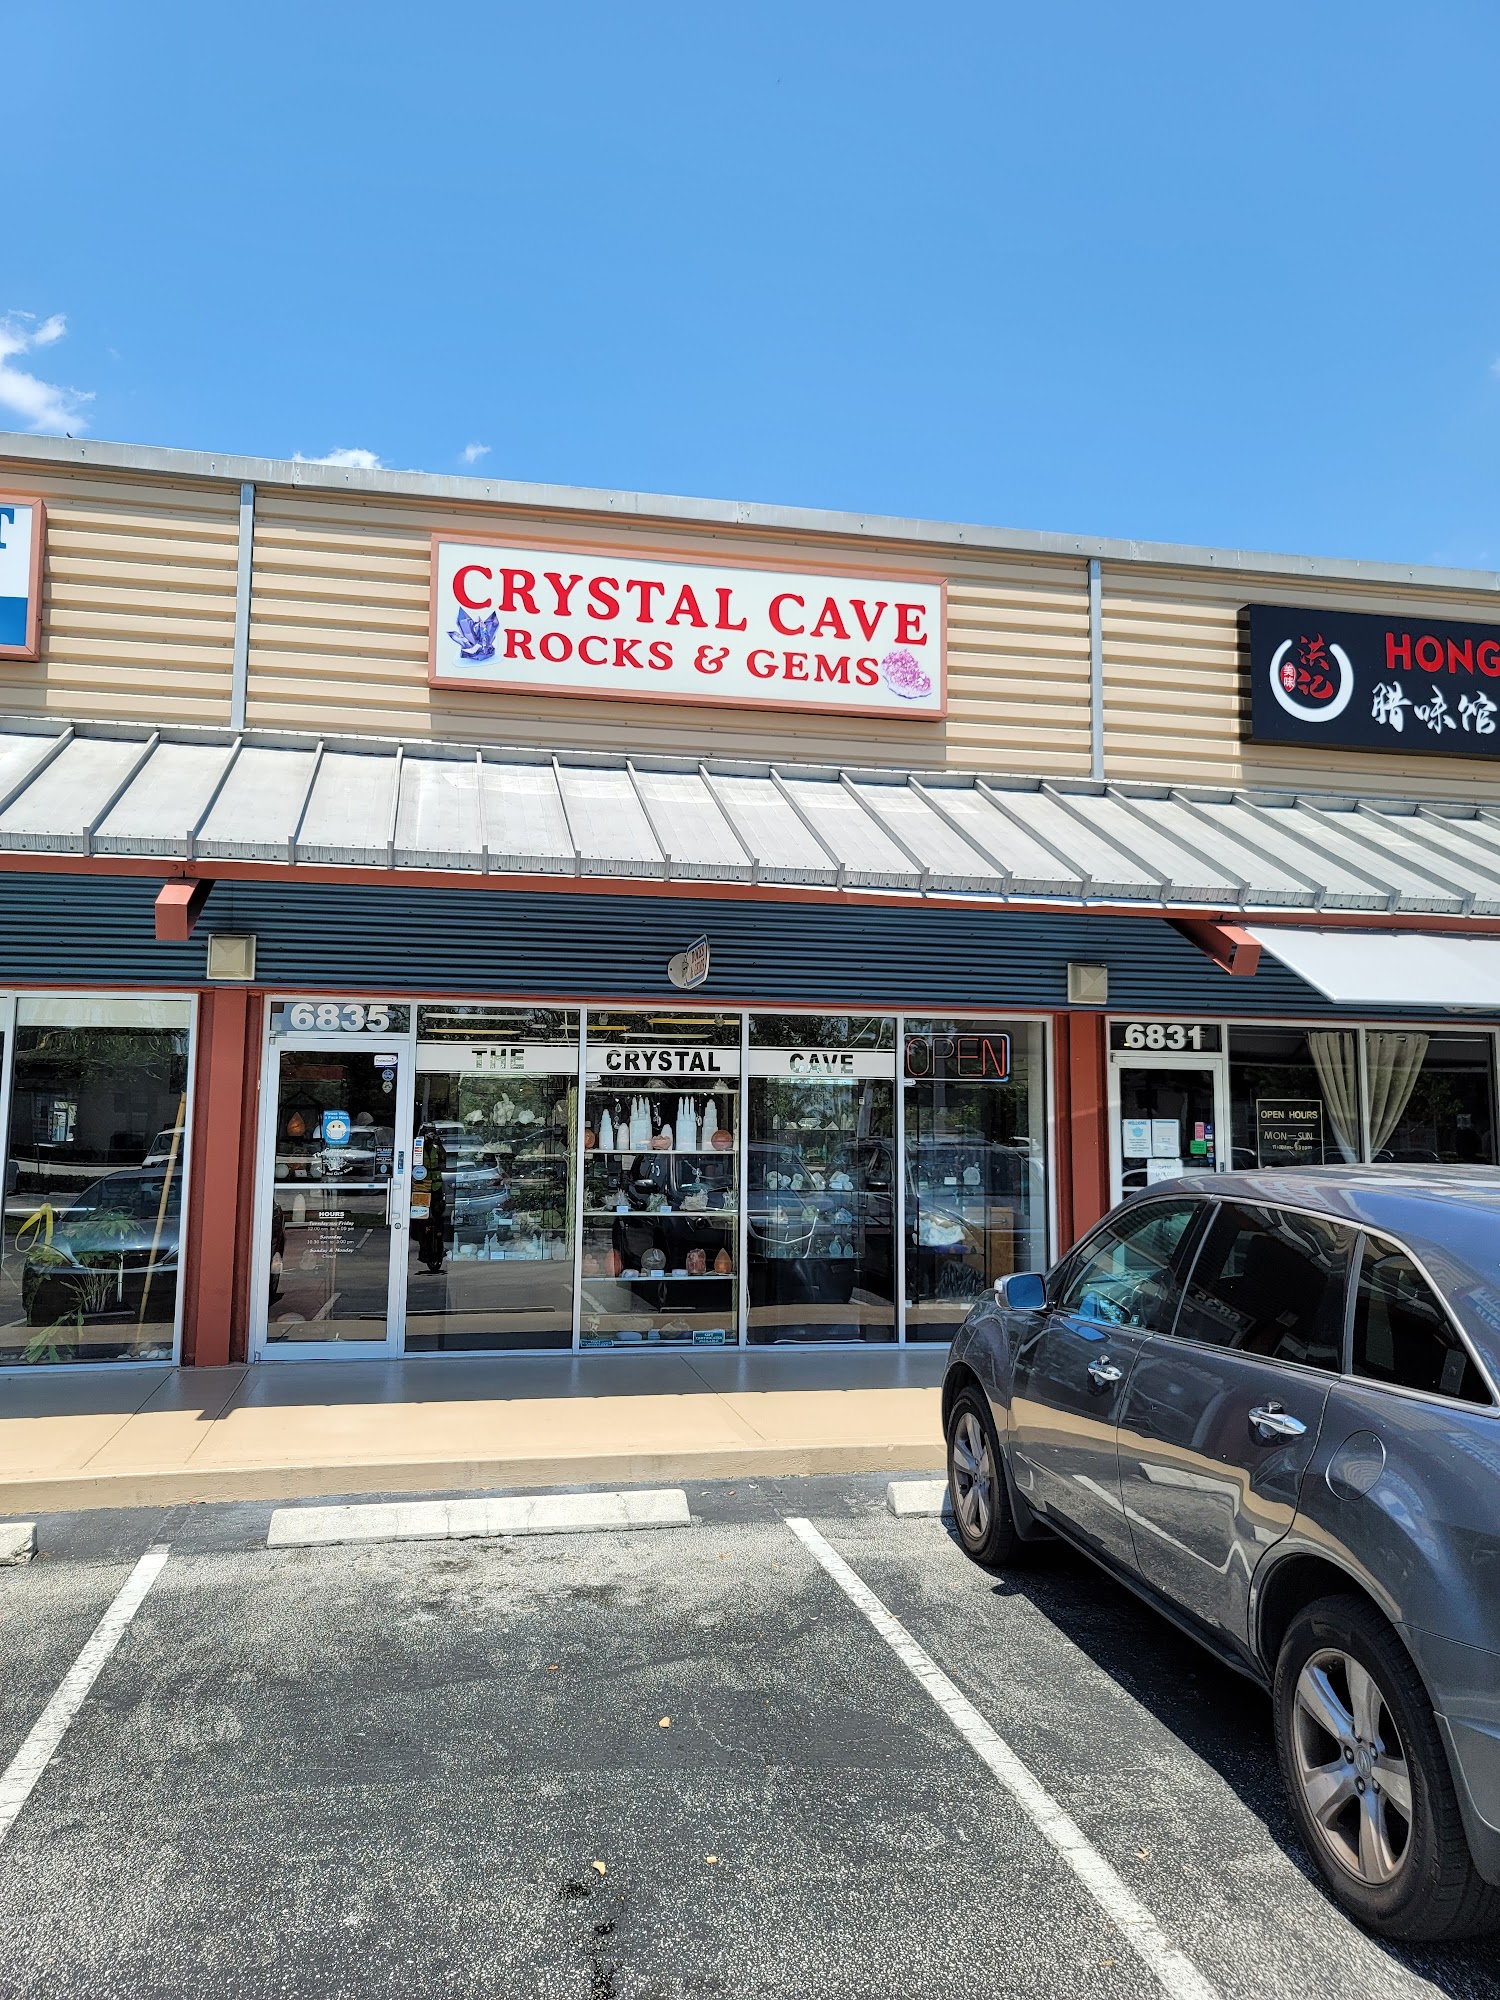 Crystal Cave Rock & Gem Shop